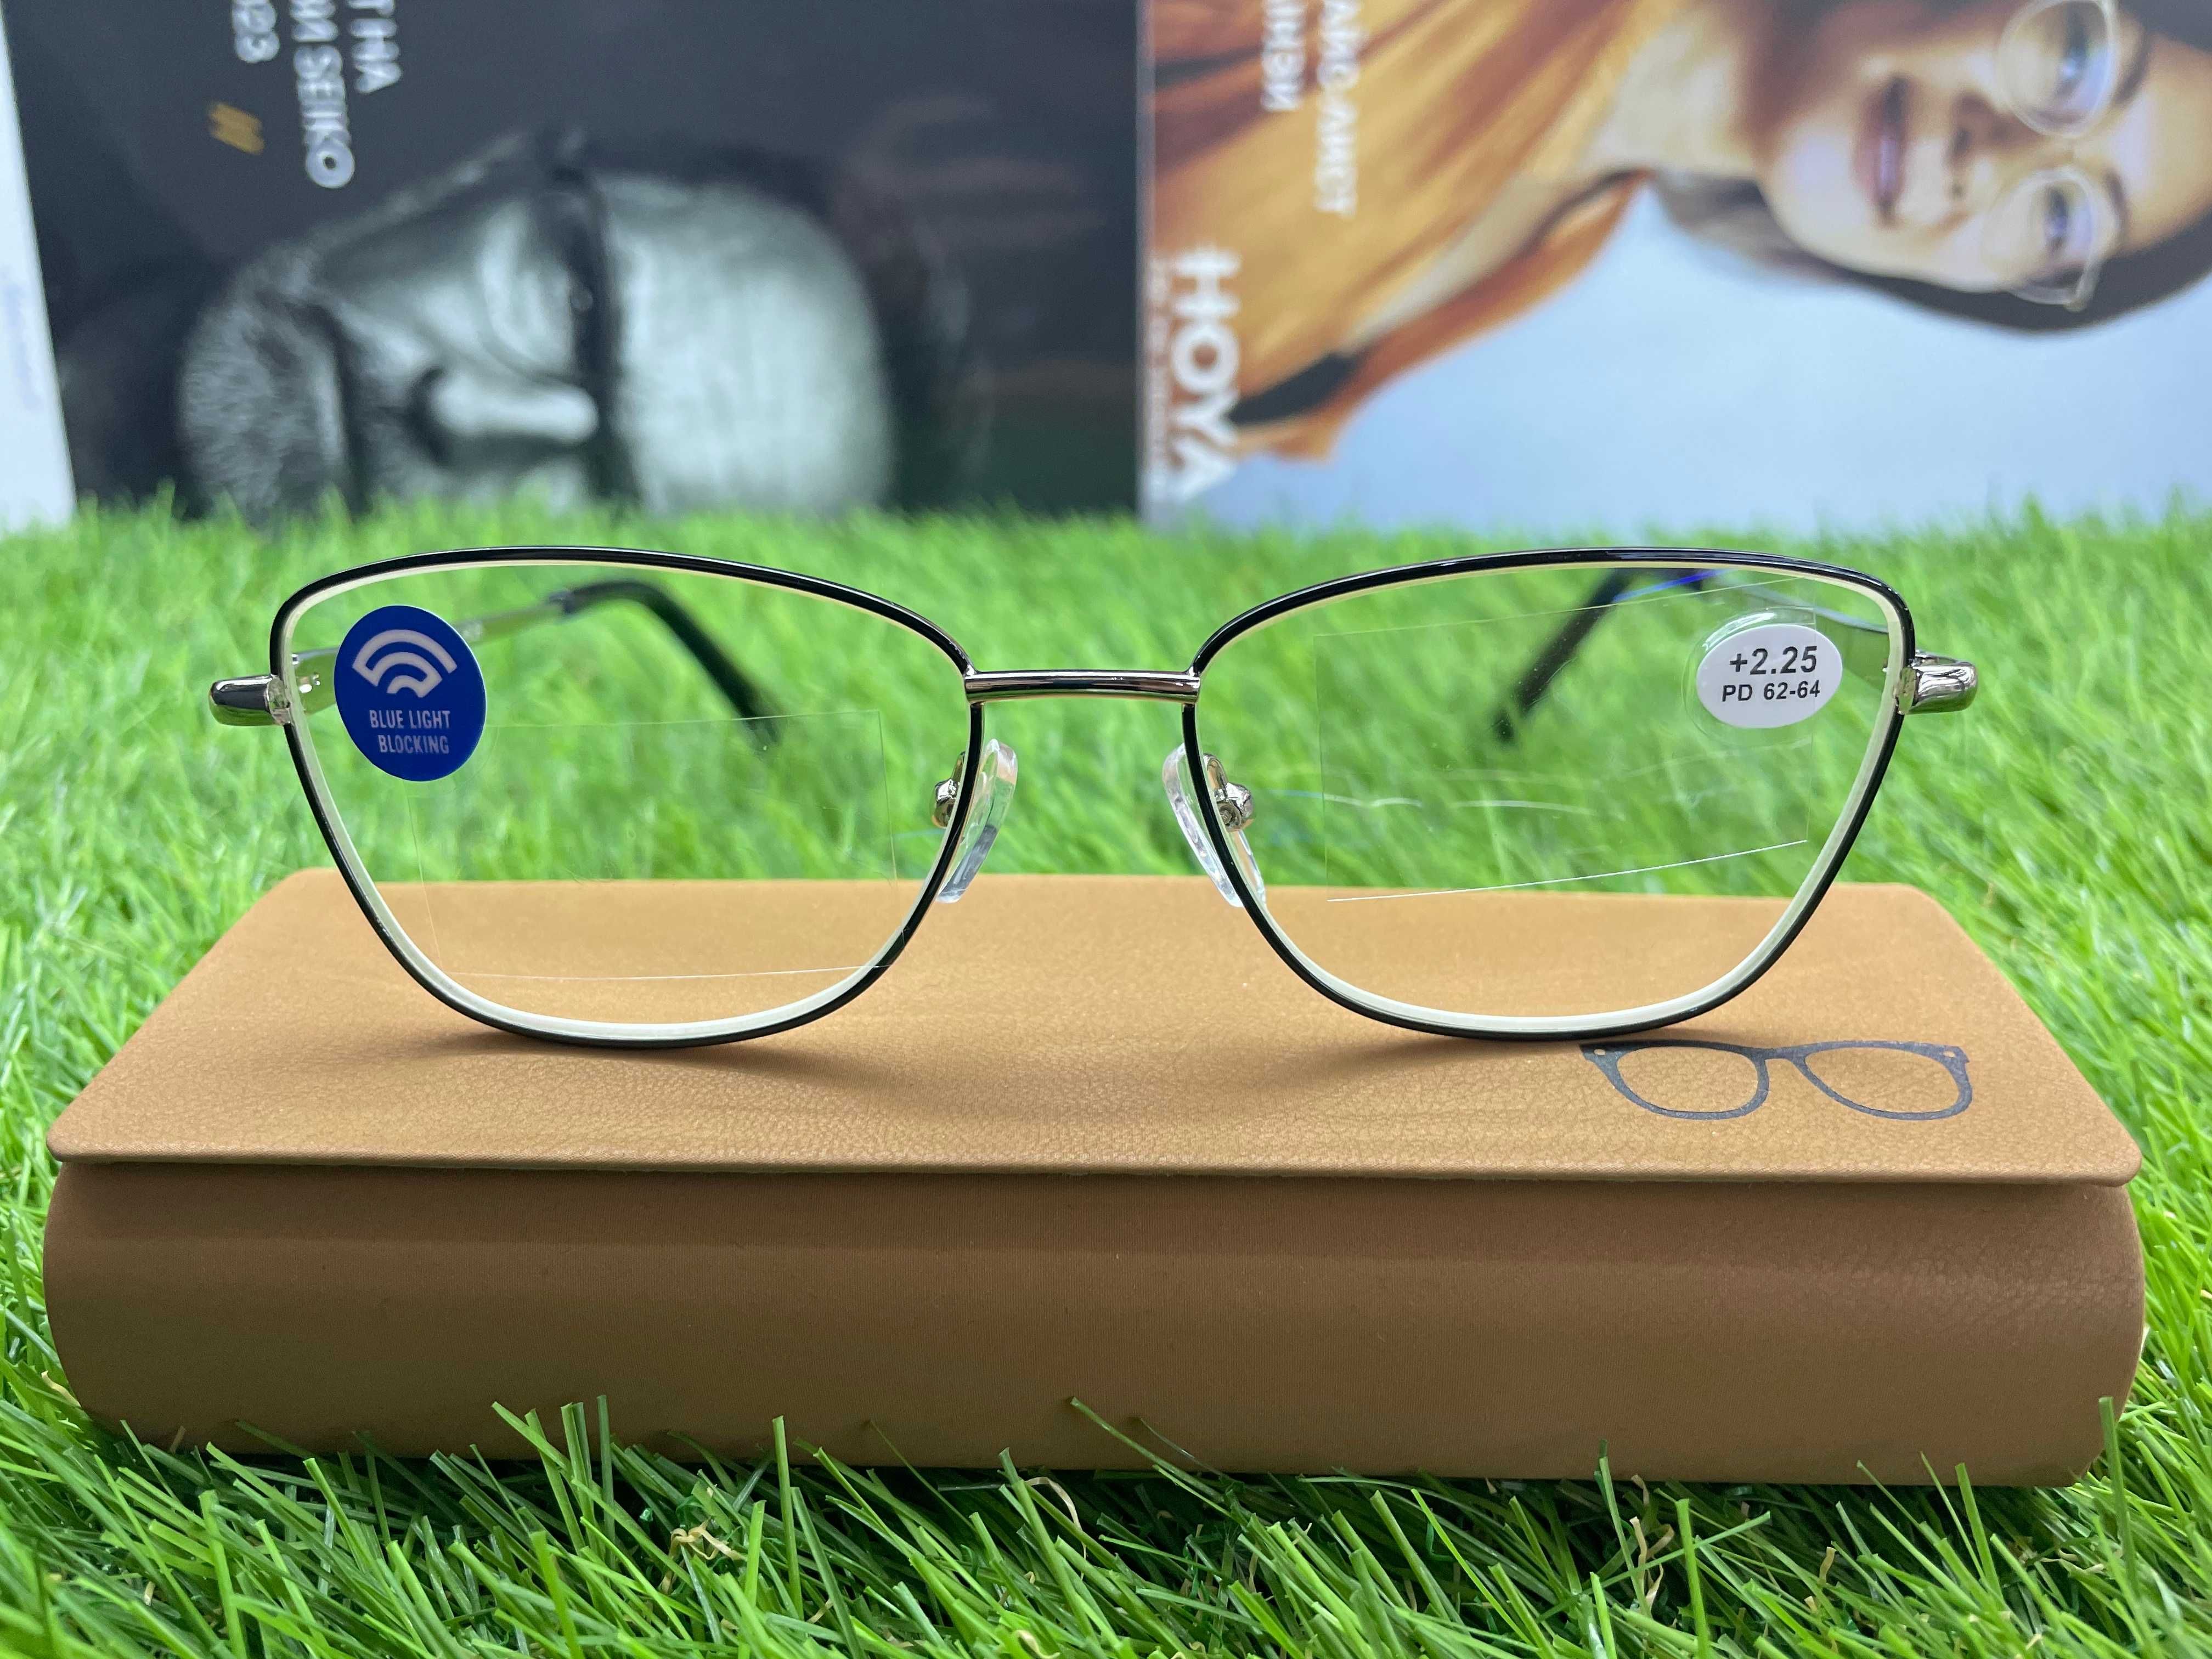 Жіночі окуляри/Женские очки/Окуляри для зору/Очки для зрения